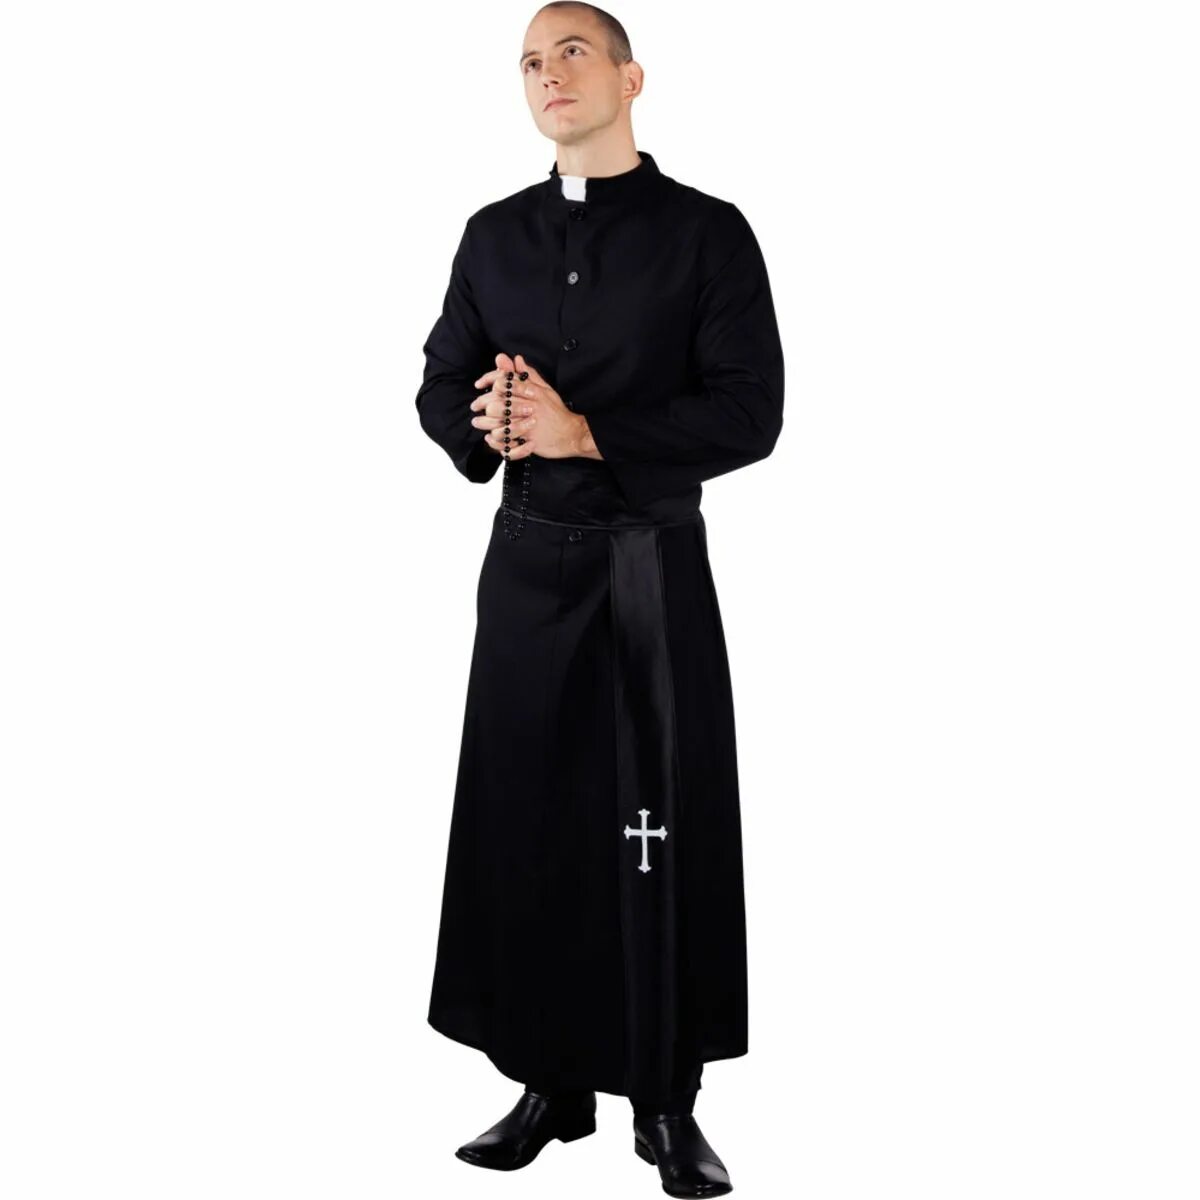 Форма пастыря. Сутана католического священника 19 века. Одеяние священника Католика. Священник 19 век черная ряса. Ряса священника монаха.